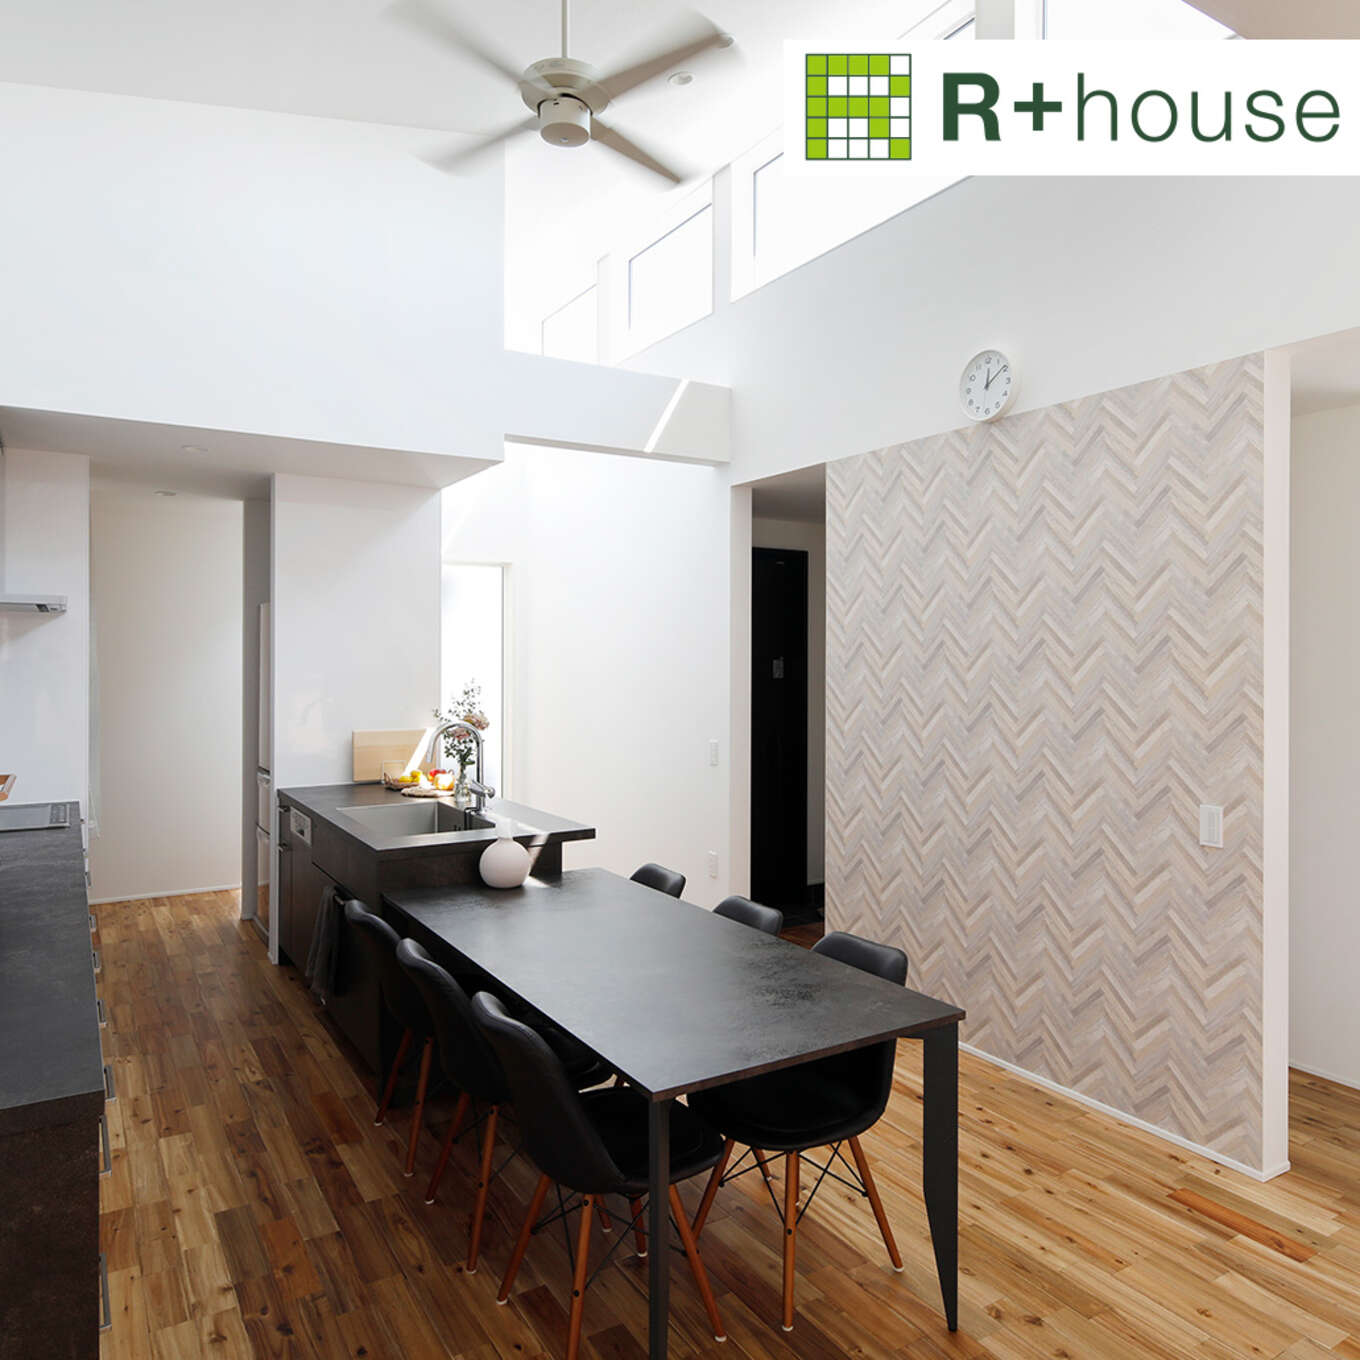 R+houseの物件のリビングダイニングの写真です。白が基調の室内に黒をメインにしたキッチンとダイニングテーブルが映えます。